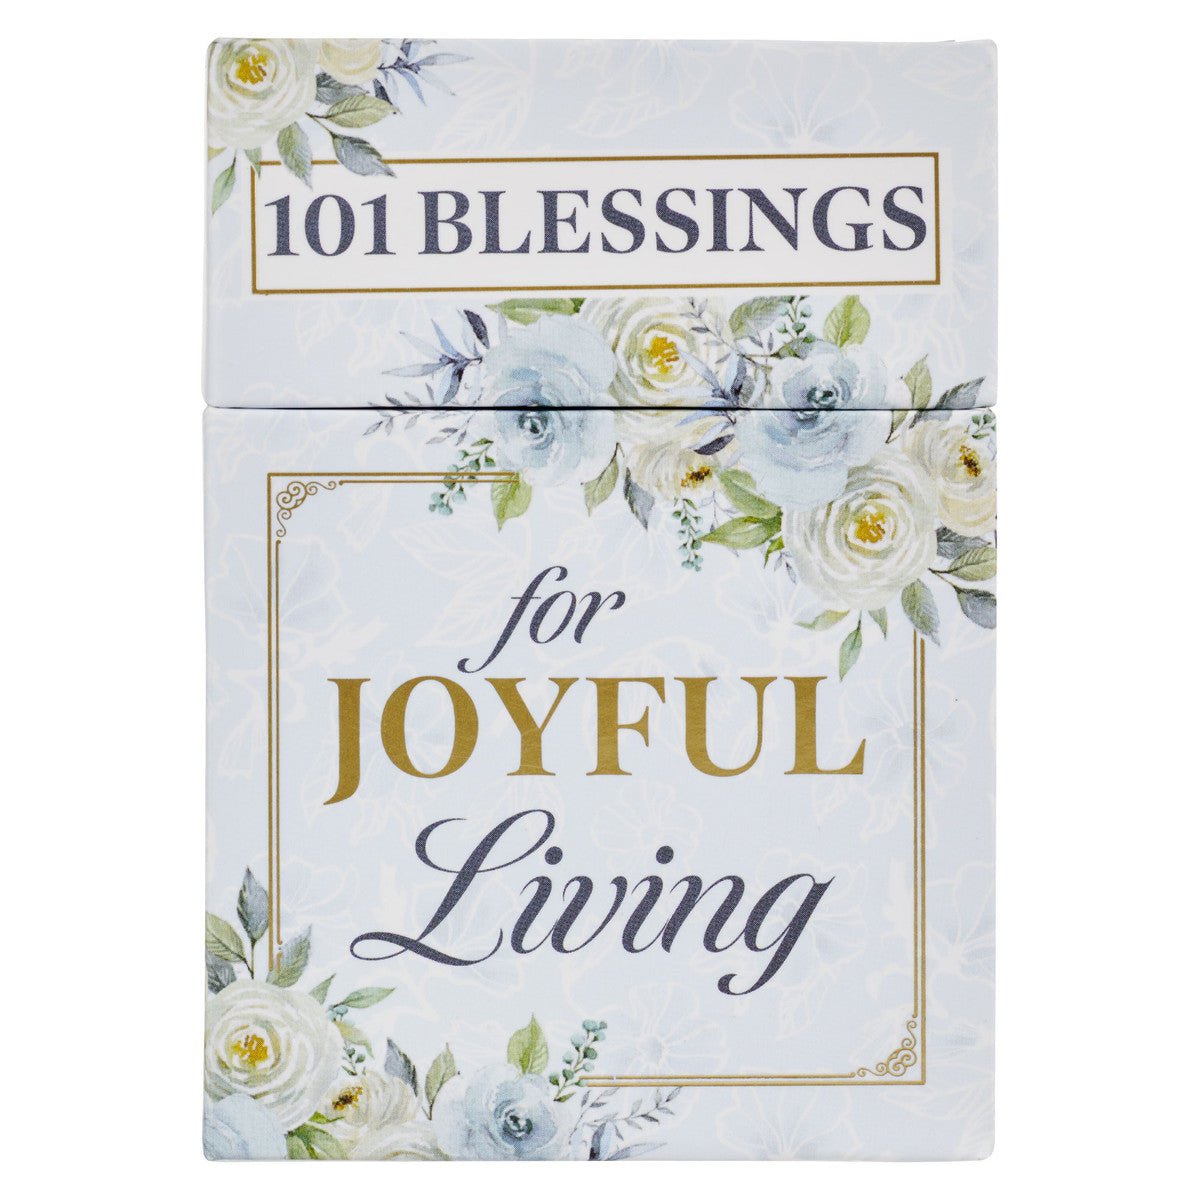 101 Blessings for Joyful Living Box of Blessings | 2FruitBearers